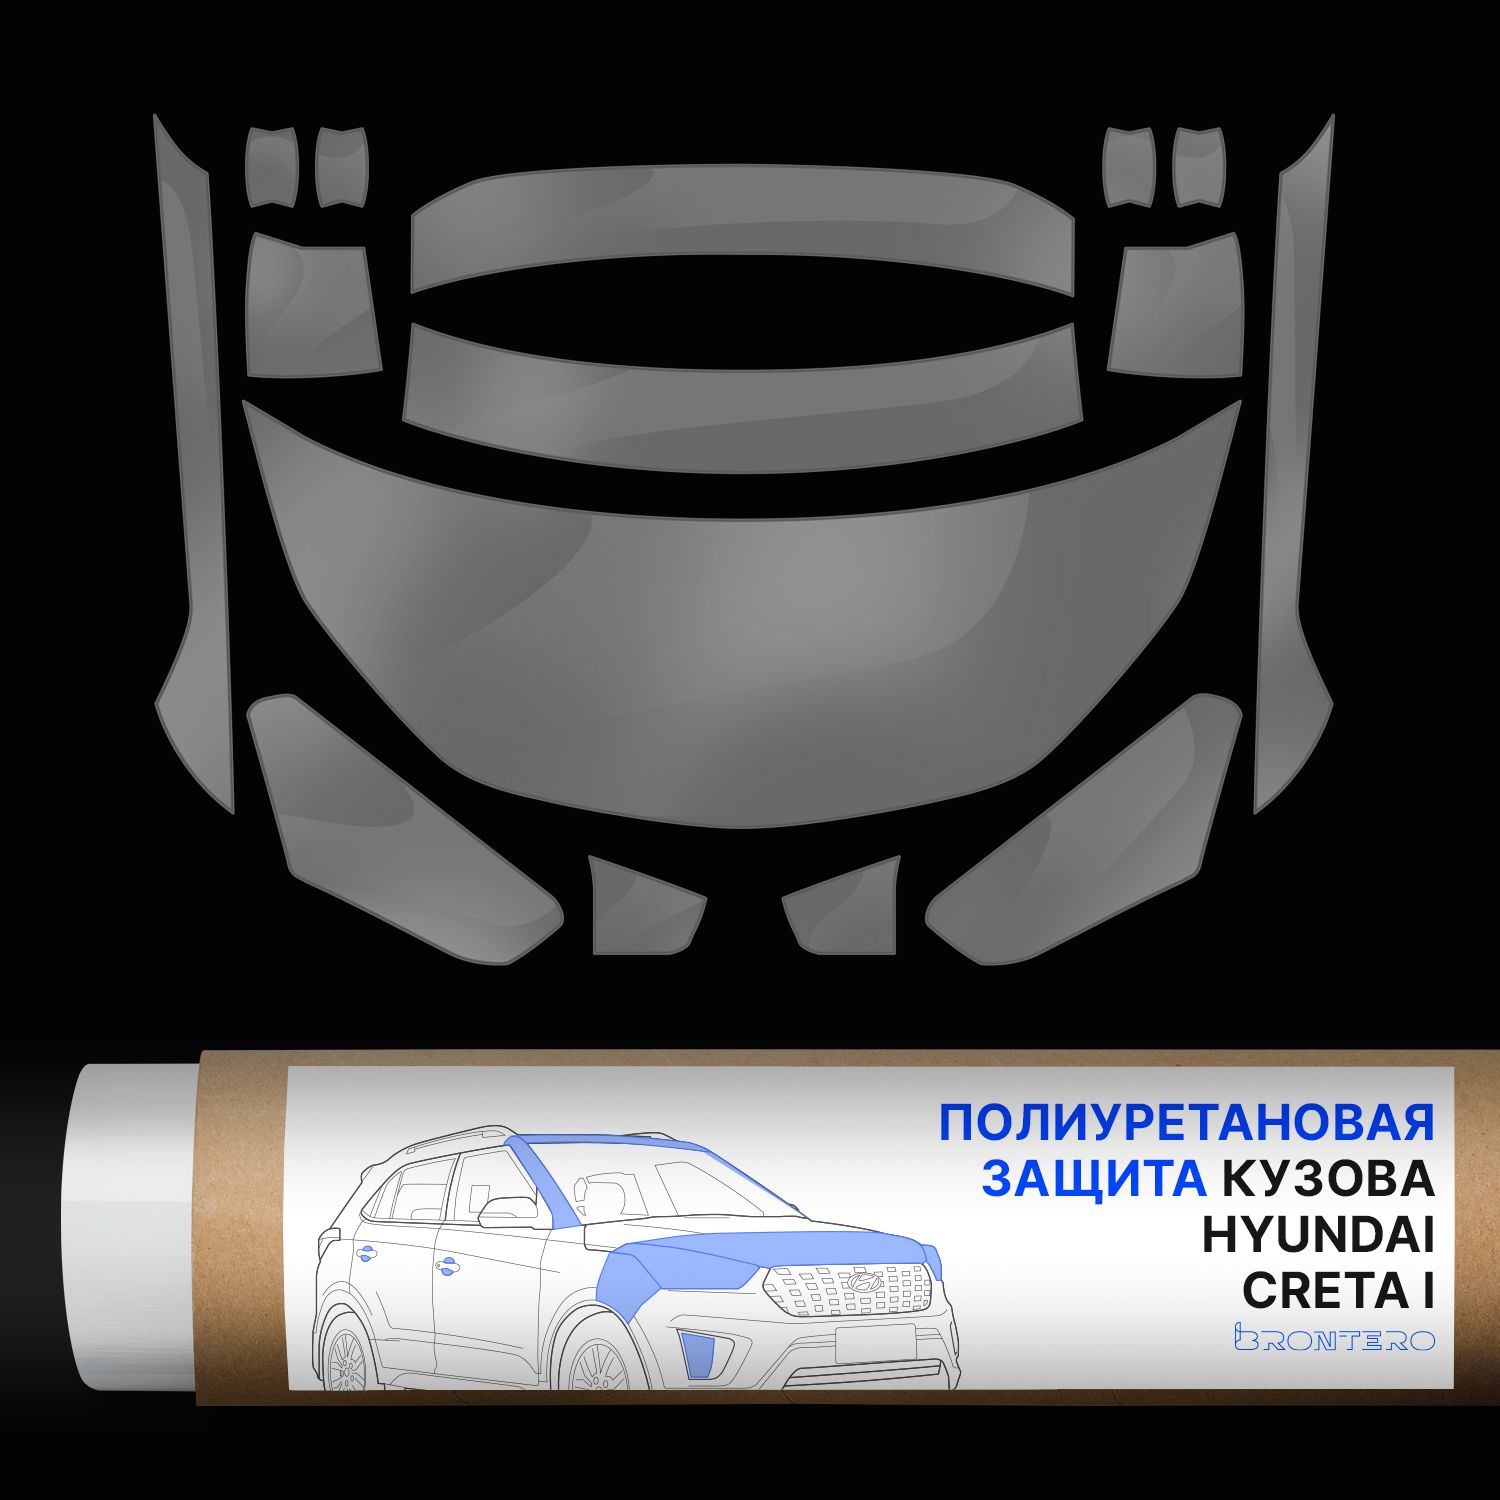 Комплект полиуретановых пленок Brontero для защиты Hyundai Creta I